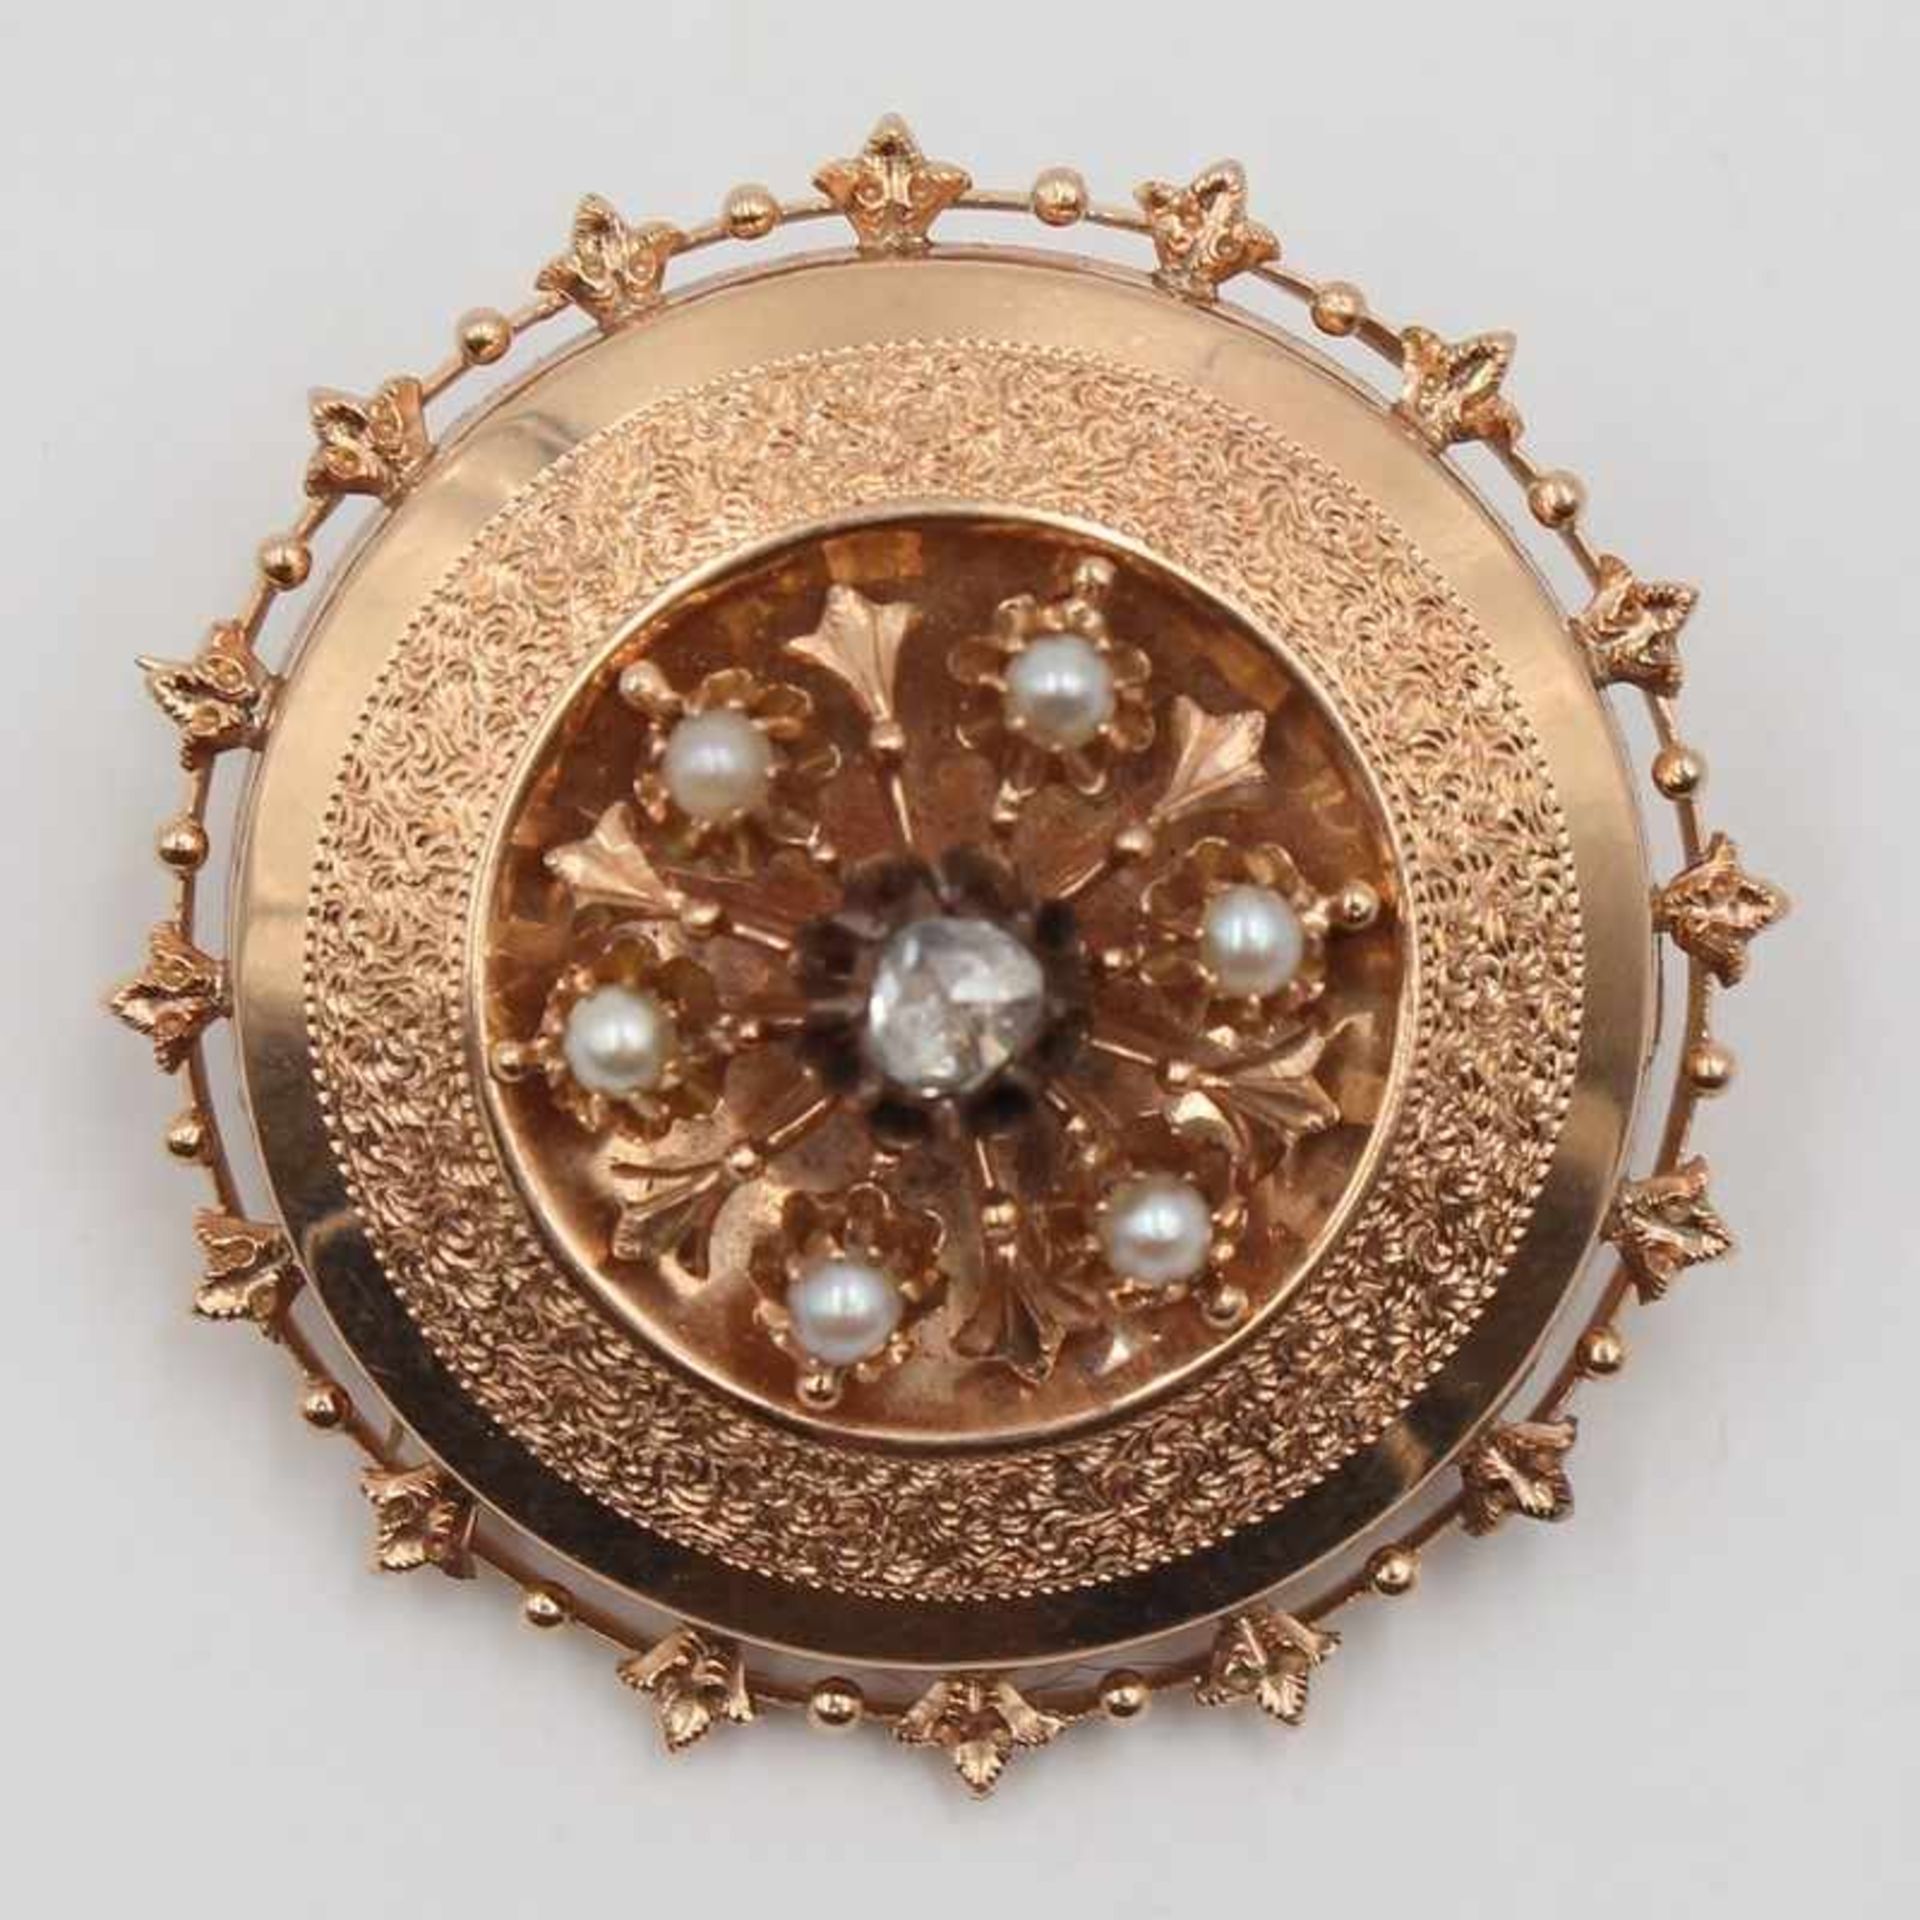 Brosche - Diamant/Perlen Historismus, GG 585 gepr., Schildform, mit durchbrochener Umrandung, mittig